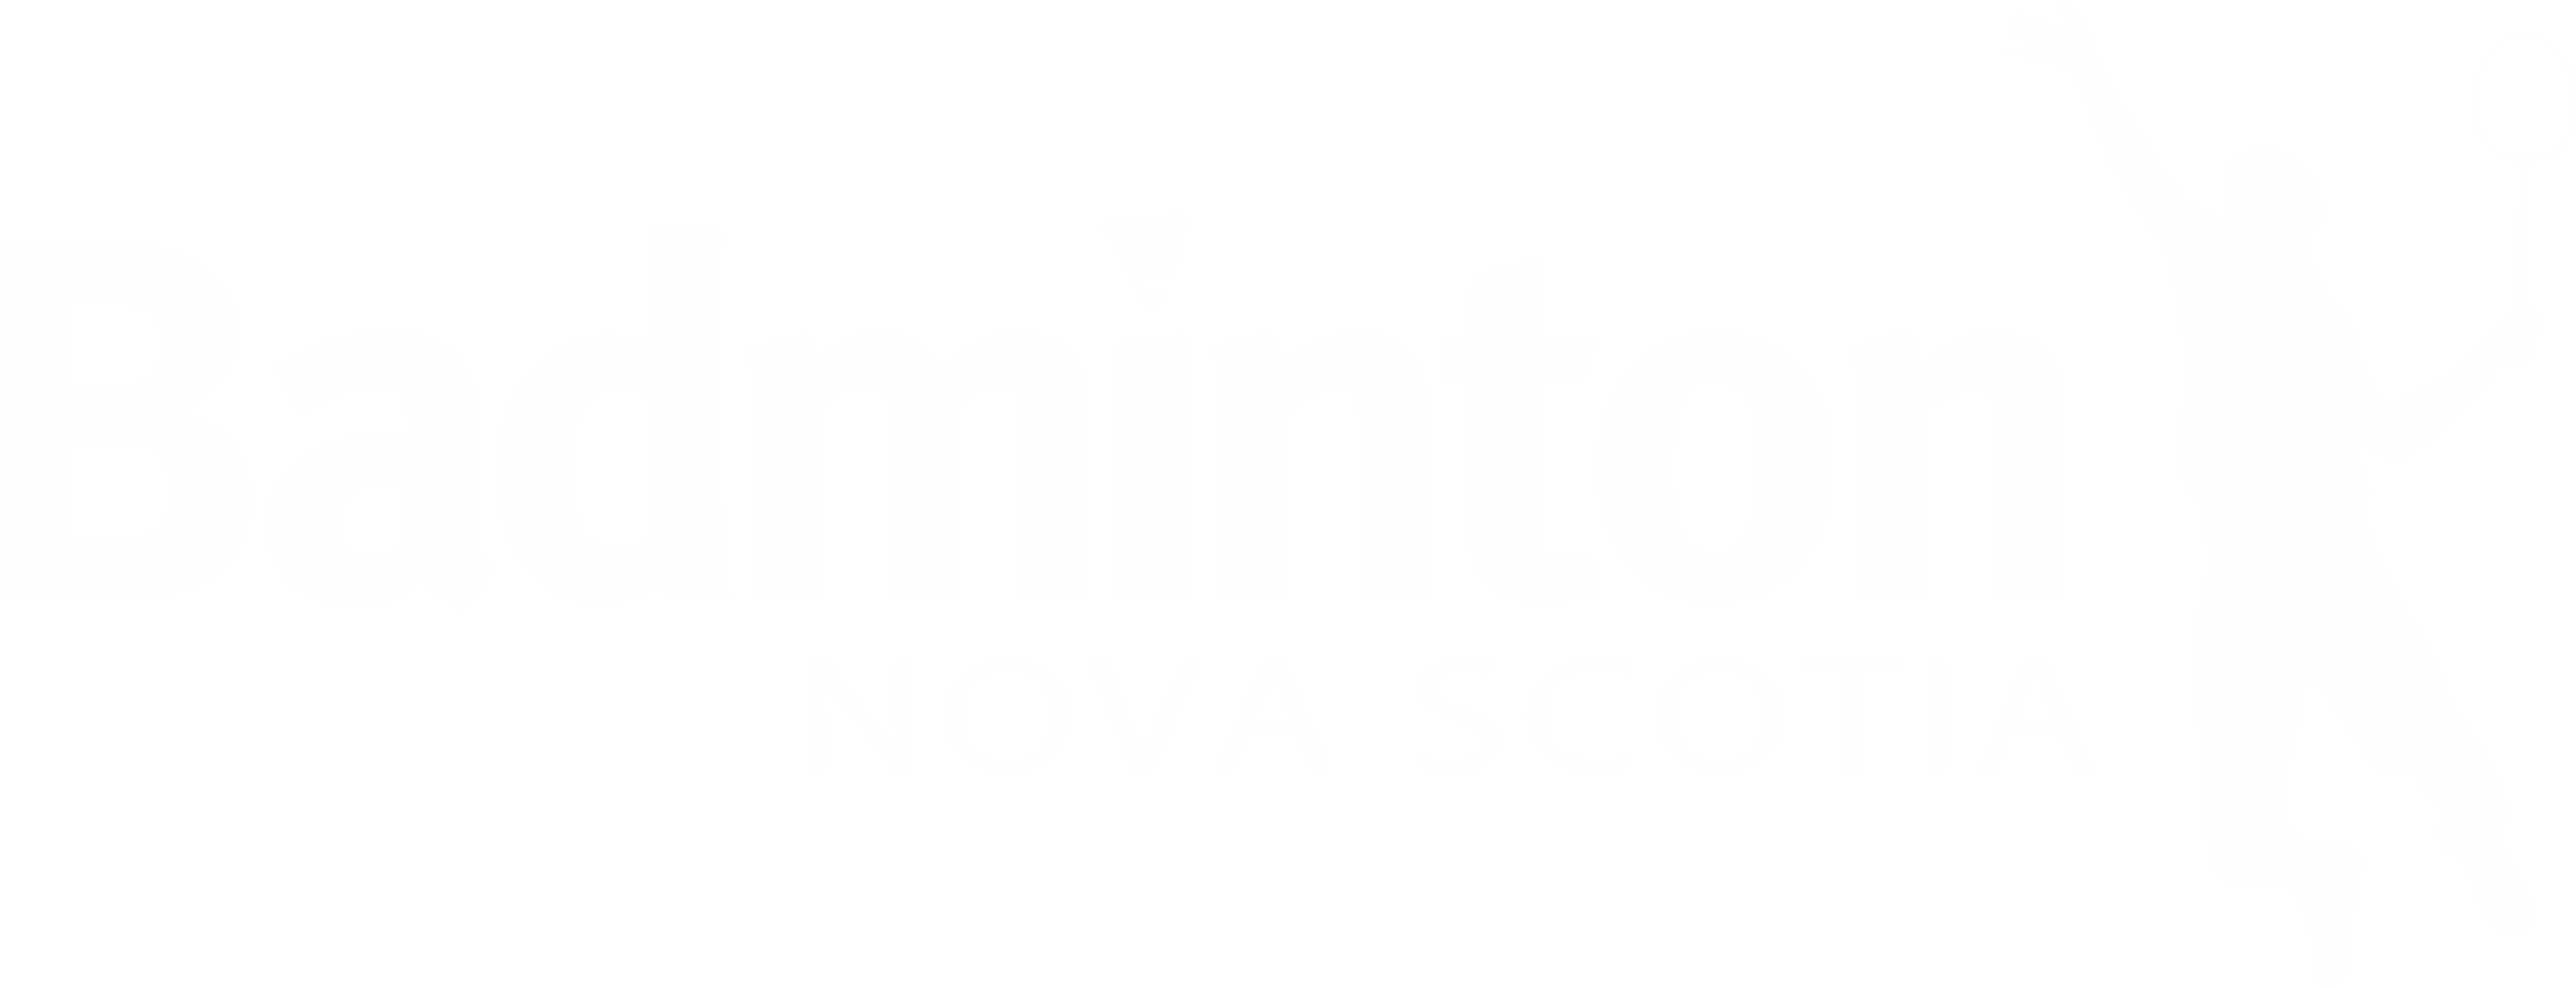 Badminton Nova Scotia